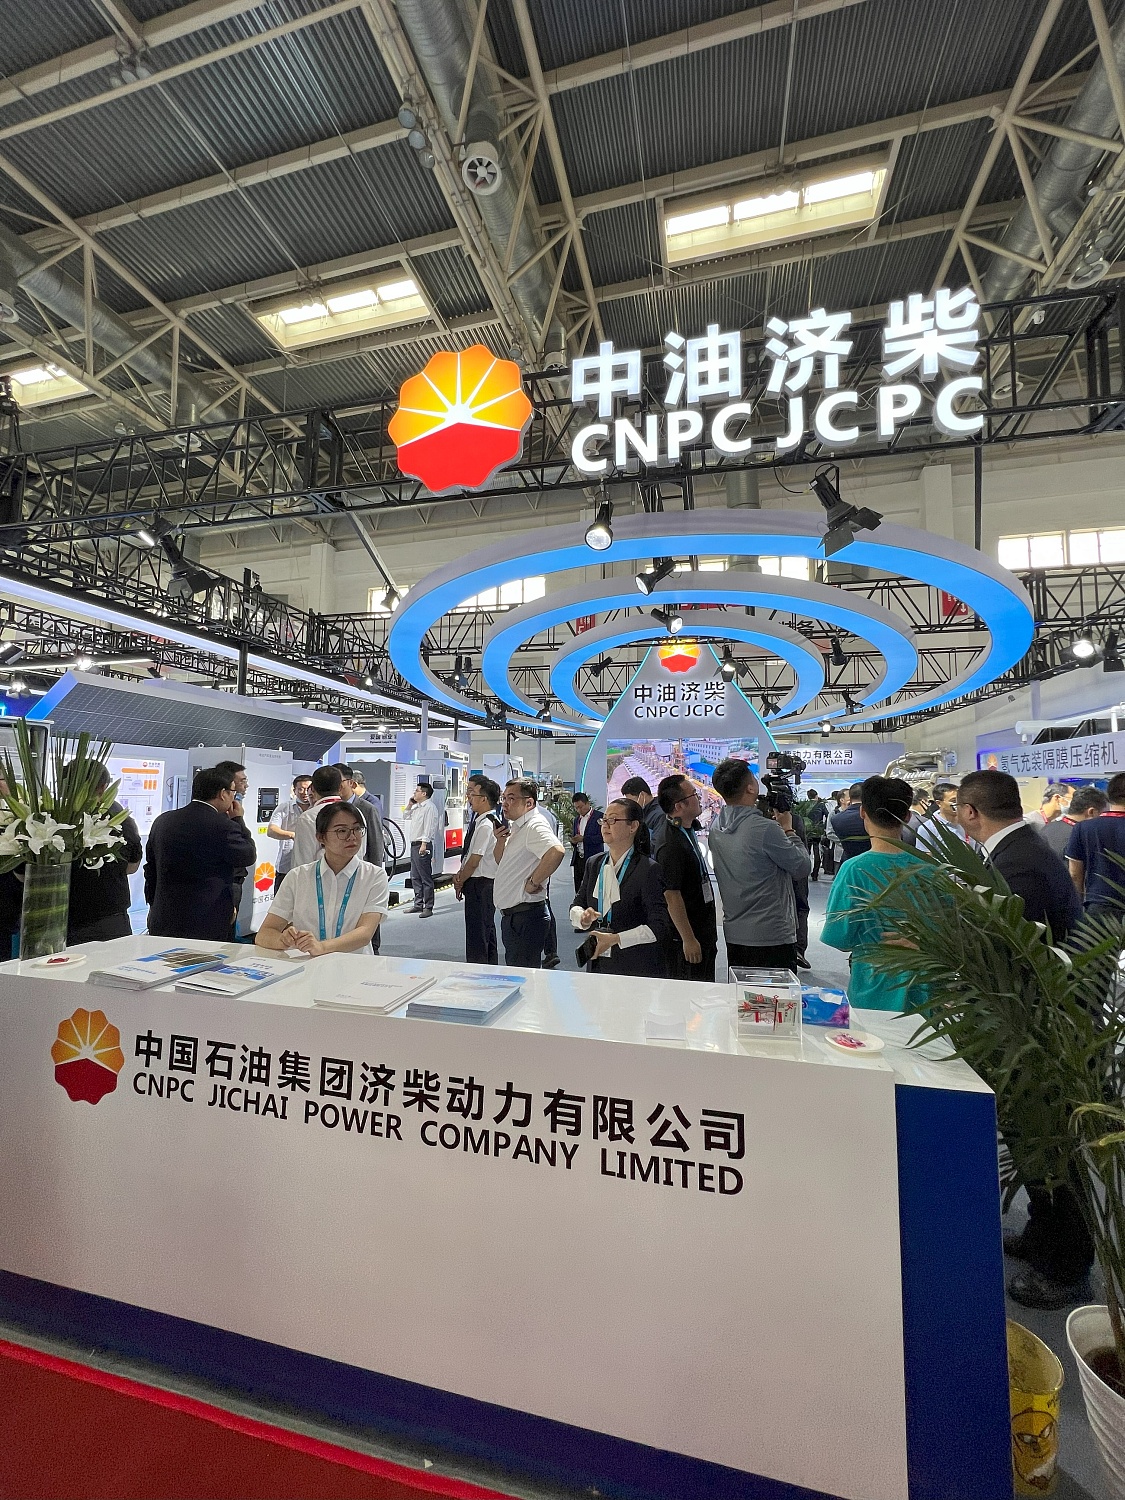 Компания ИНГК посетила самую крупную нефтегазовую выставку в Азии – CIPPE-2023 (The 23rd China International Petroleum &Petrochemical Technology and Equipment Exhibition), г. Пекин, Китай